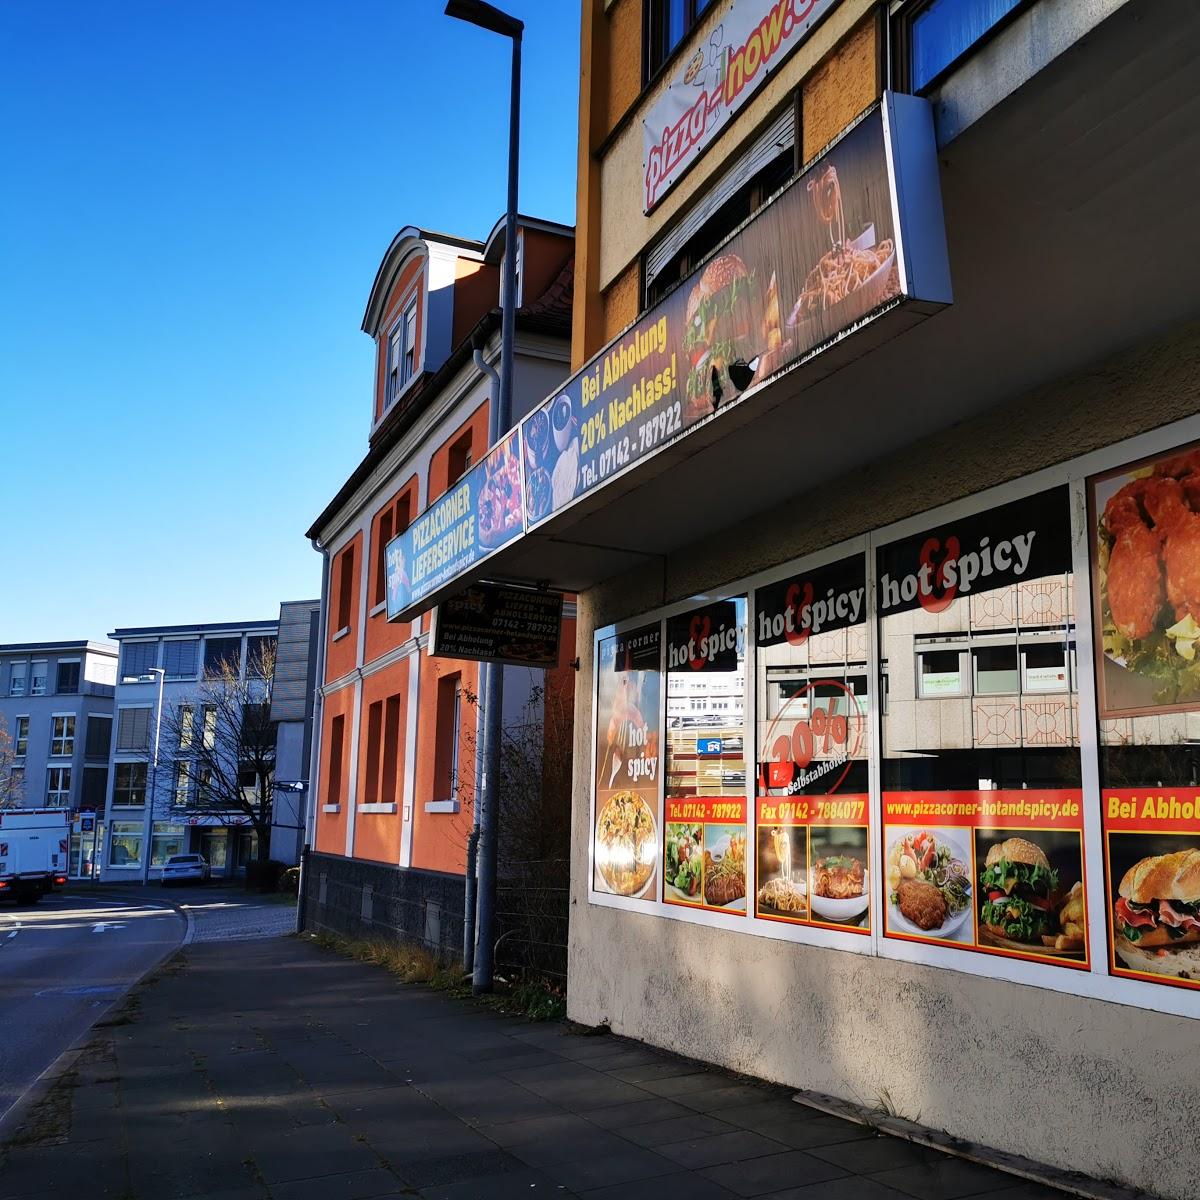 Restaurant "Hot & Spicy Pizza Corner" in Bietigheim-Bissingen